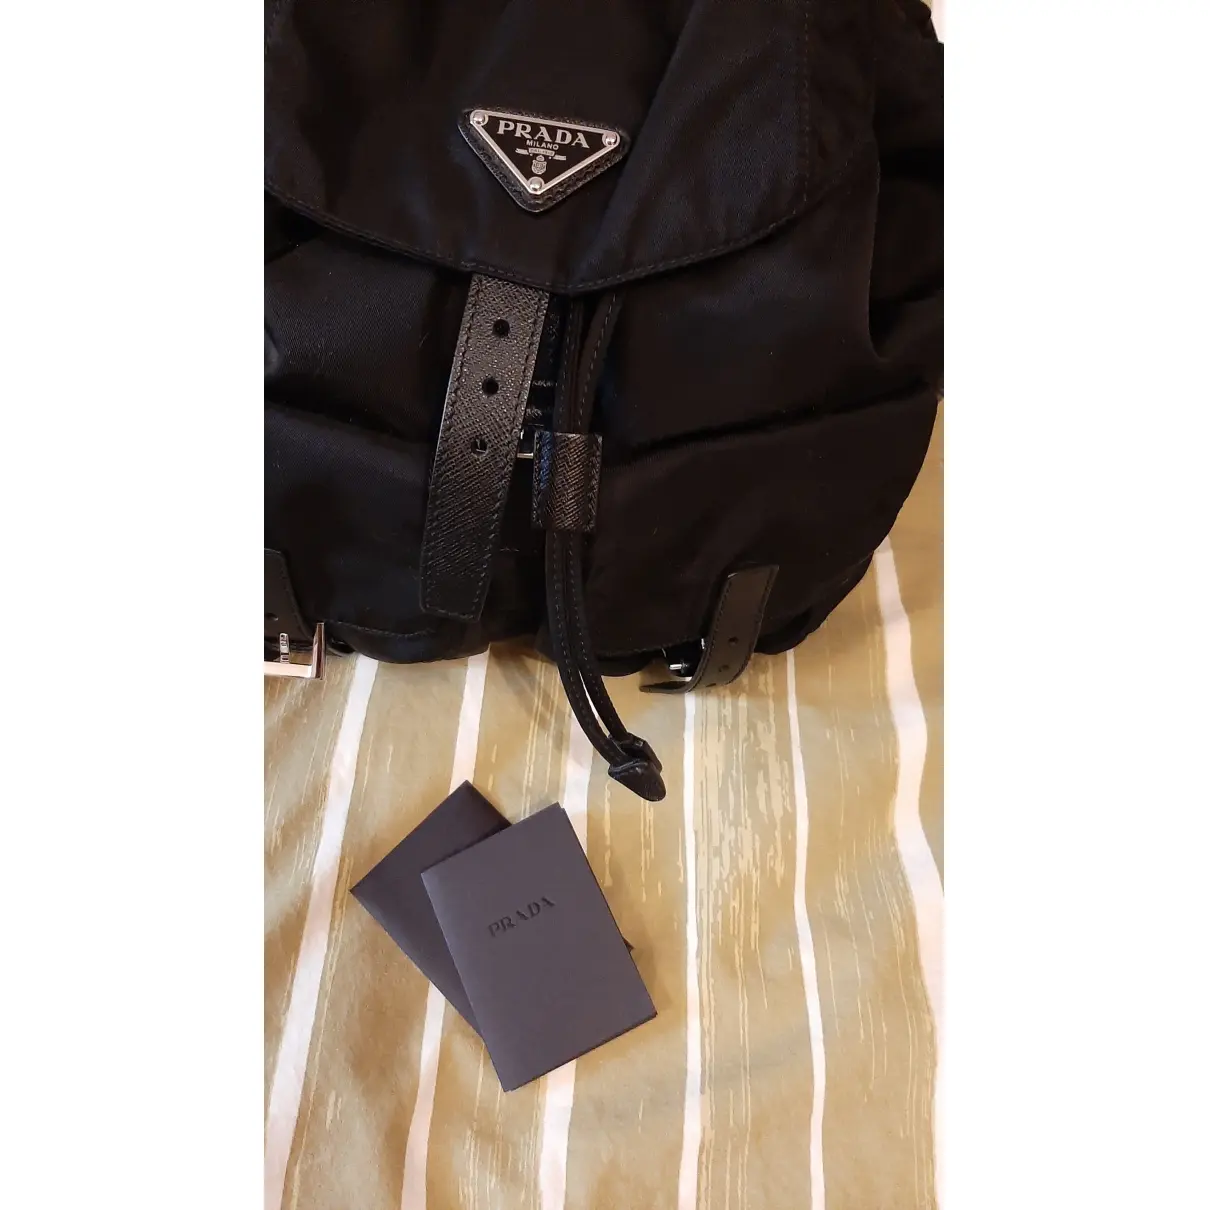 Buy Prada Cloth backpack online